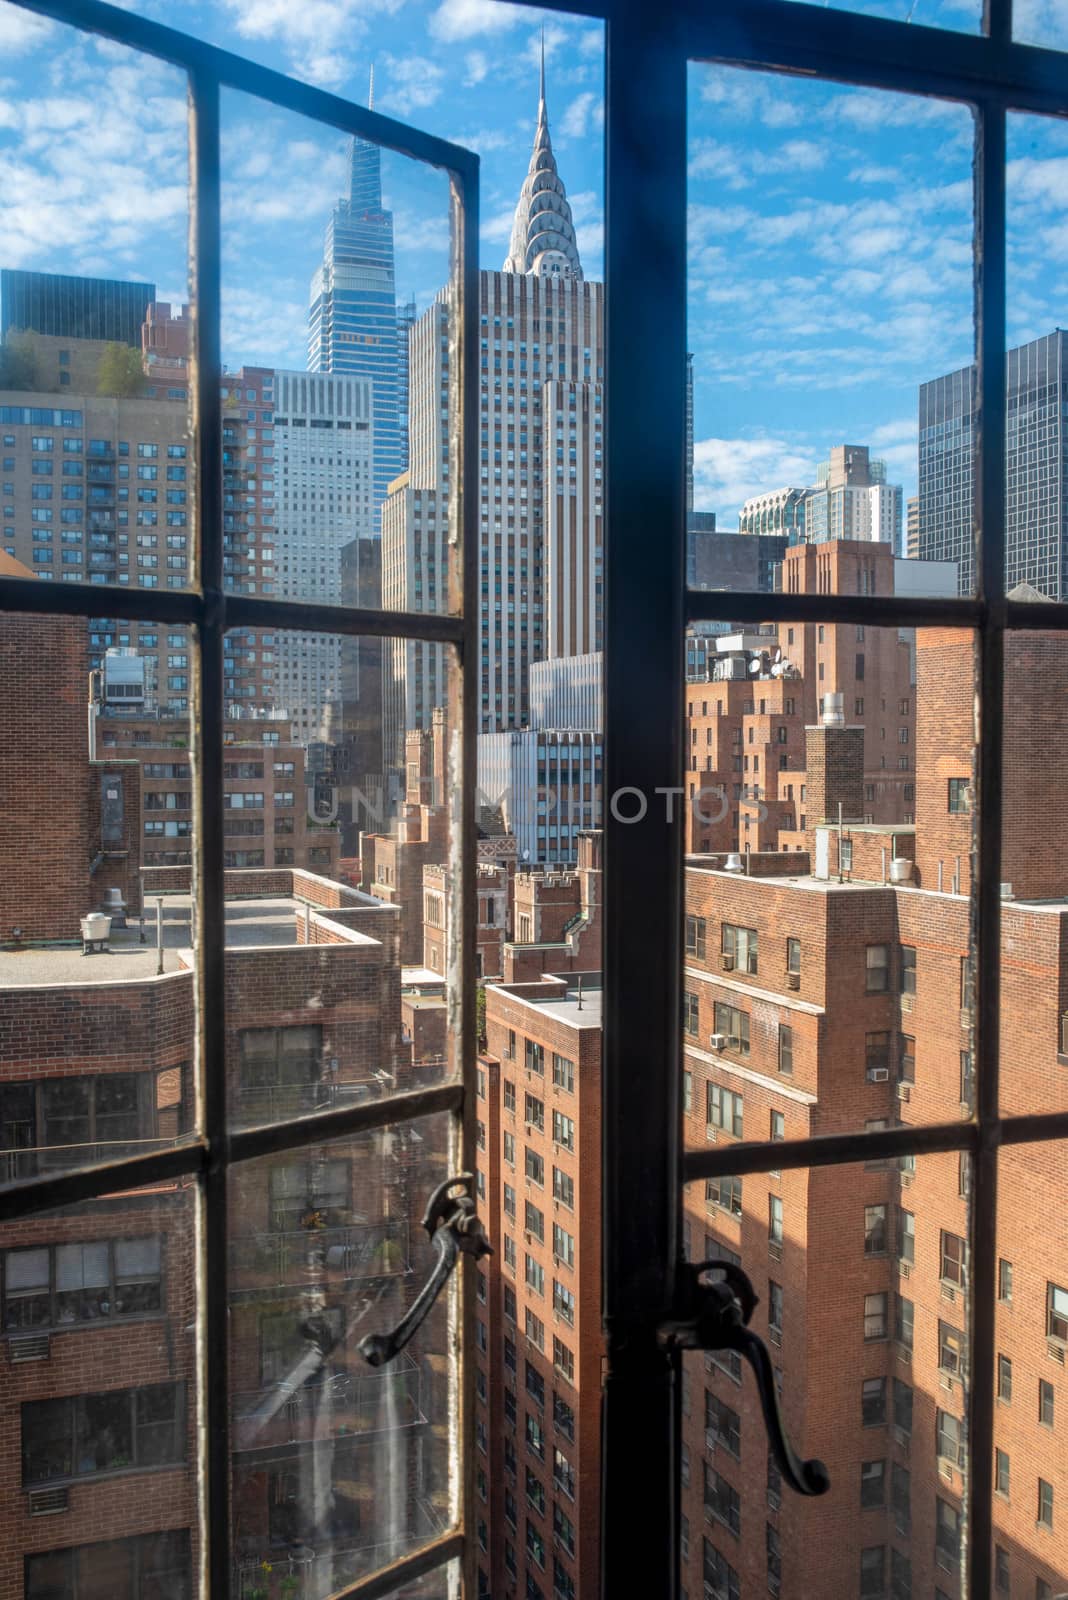 Manhattan skyline viewed through old fashioned open window. by marysalen